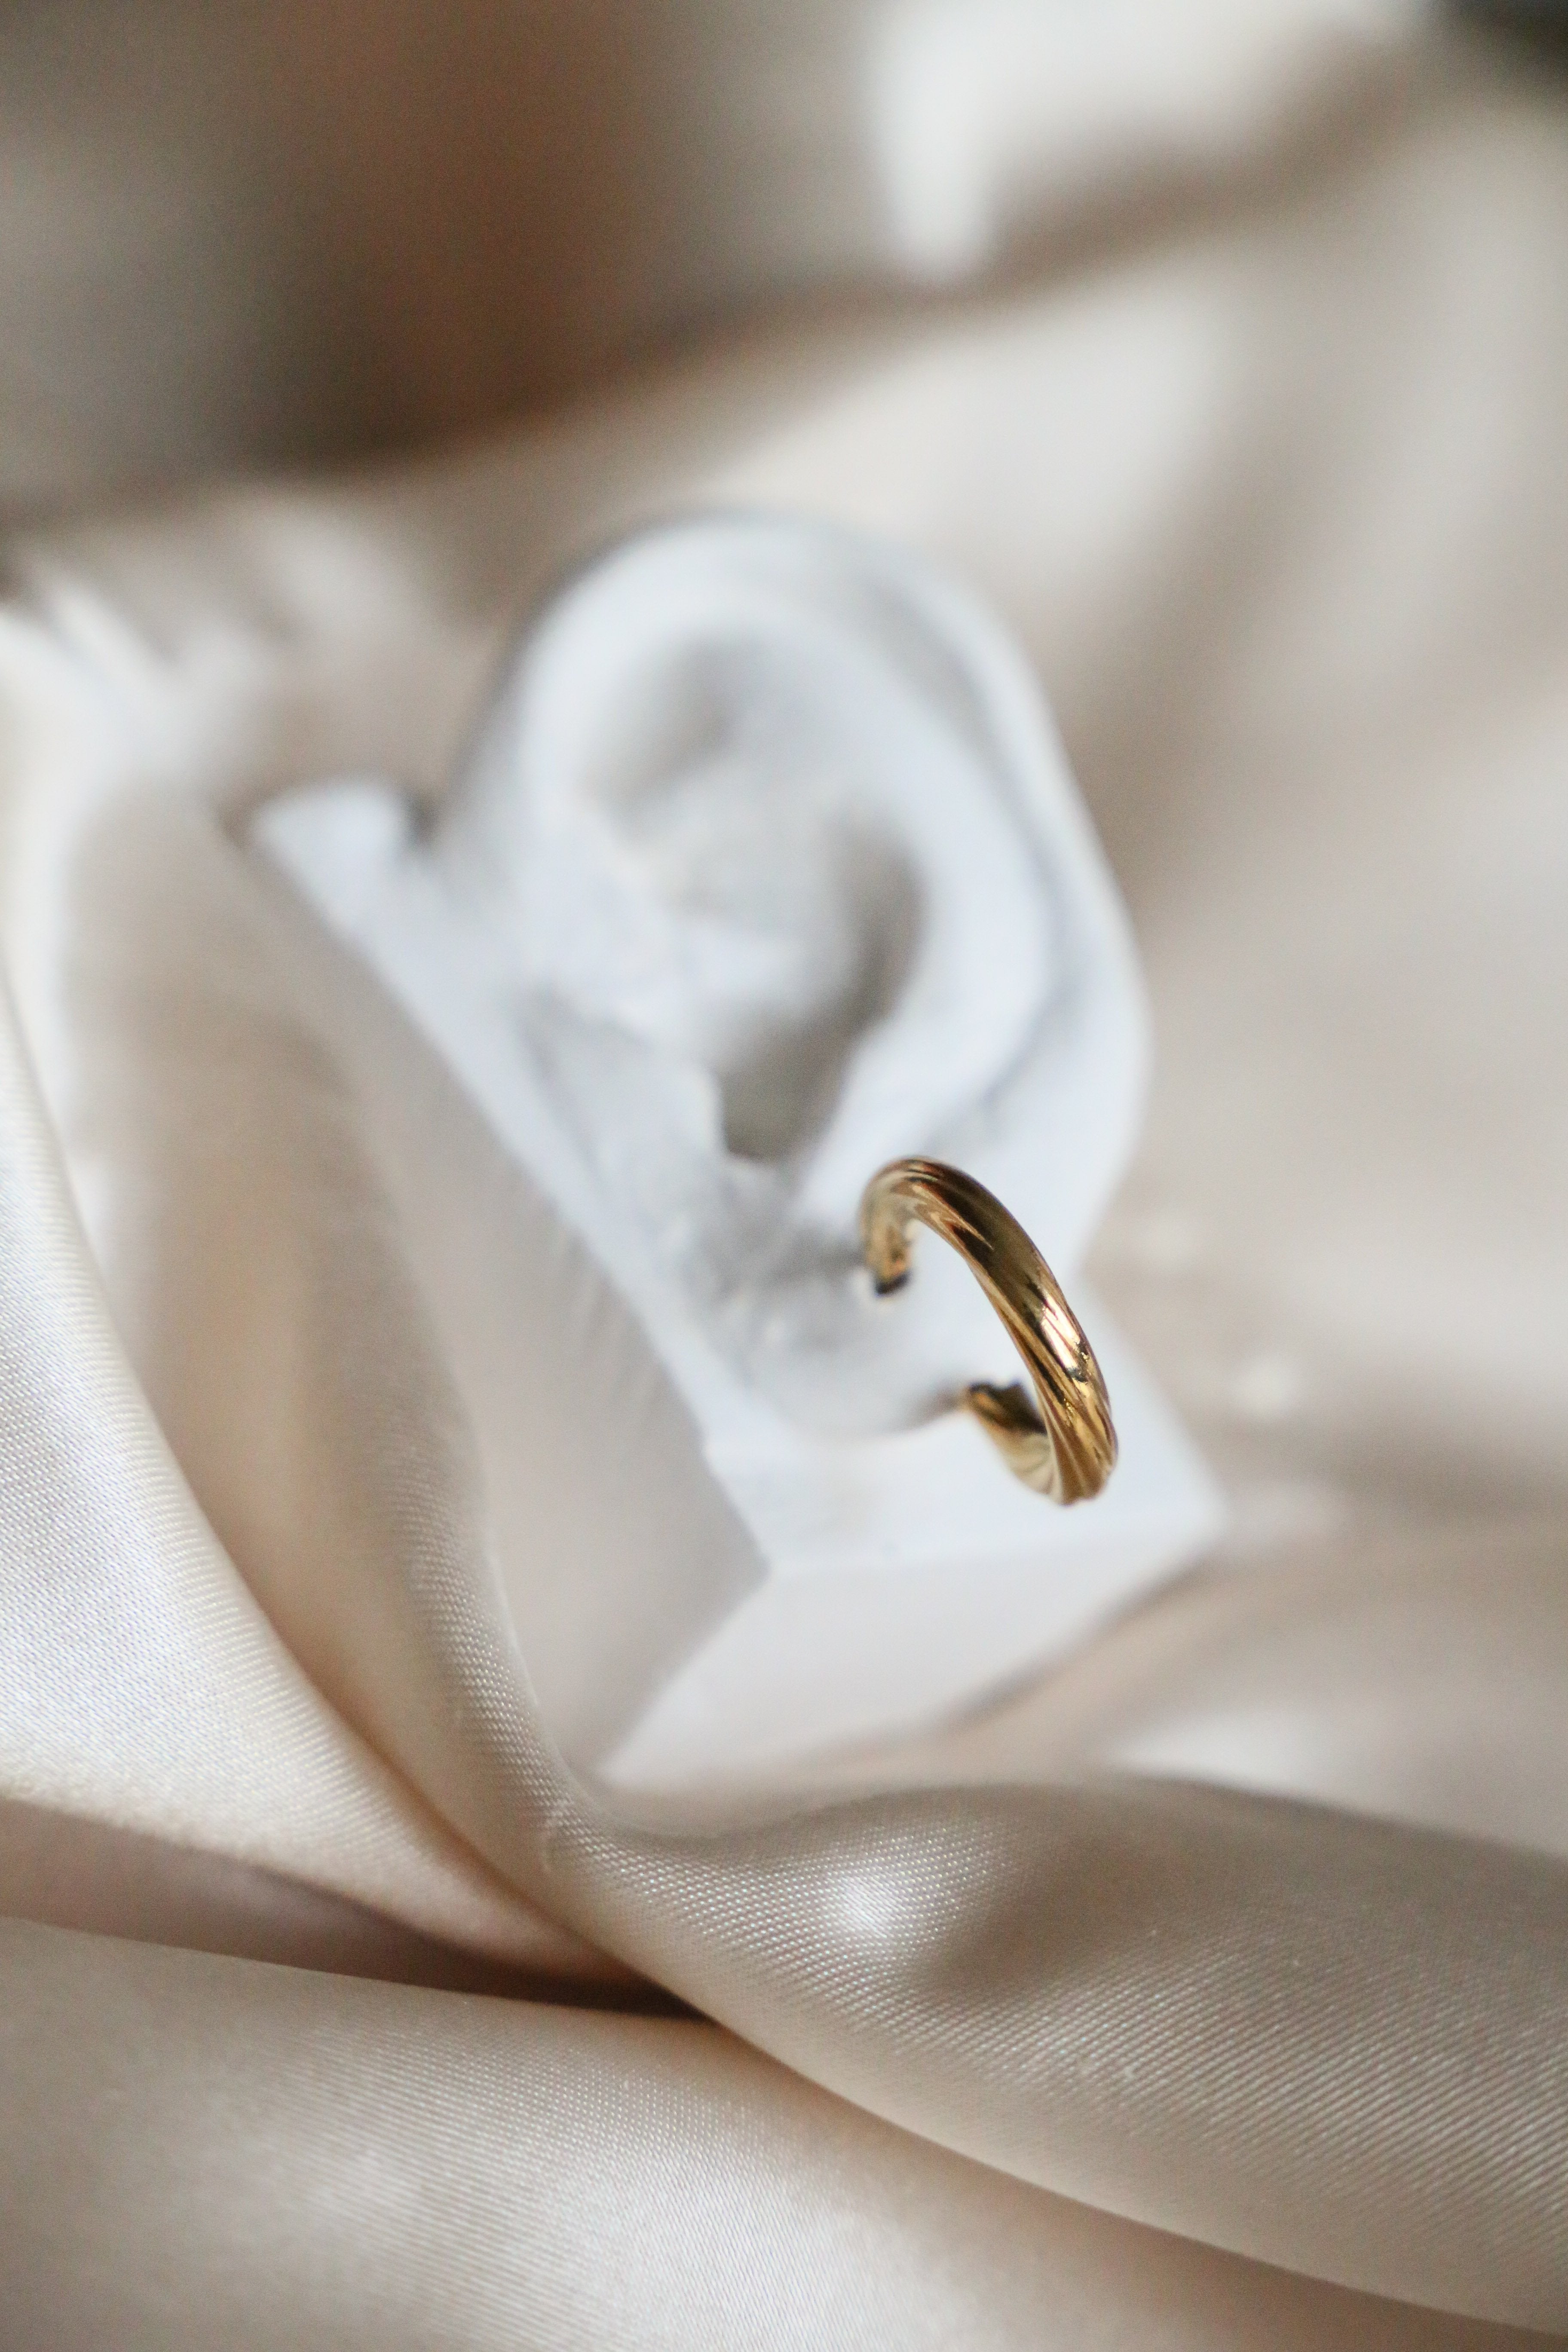 Lea Hoop Earrings - Boutique Minimaliste has waterproof, durable, elegant and vintage inspired jewelry